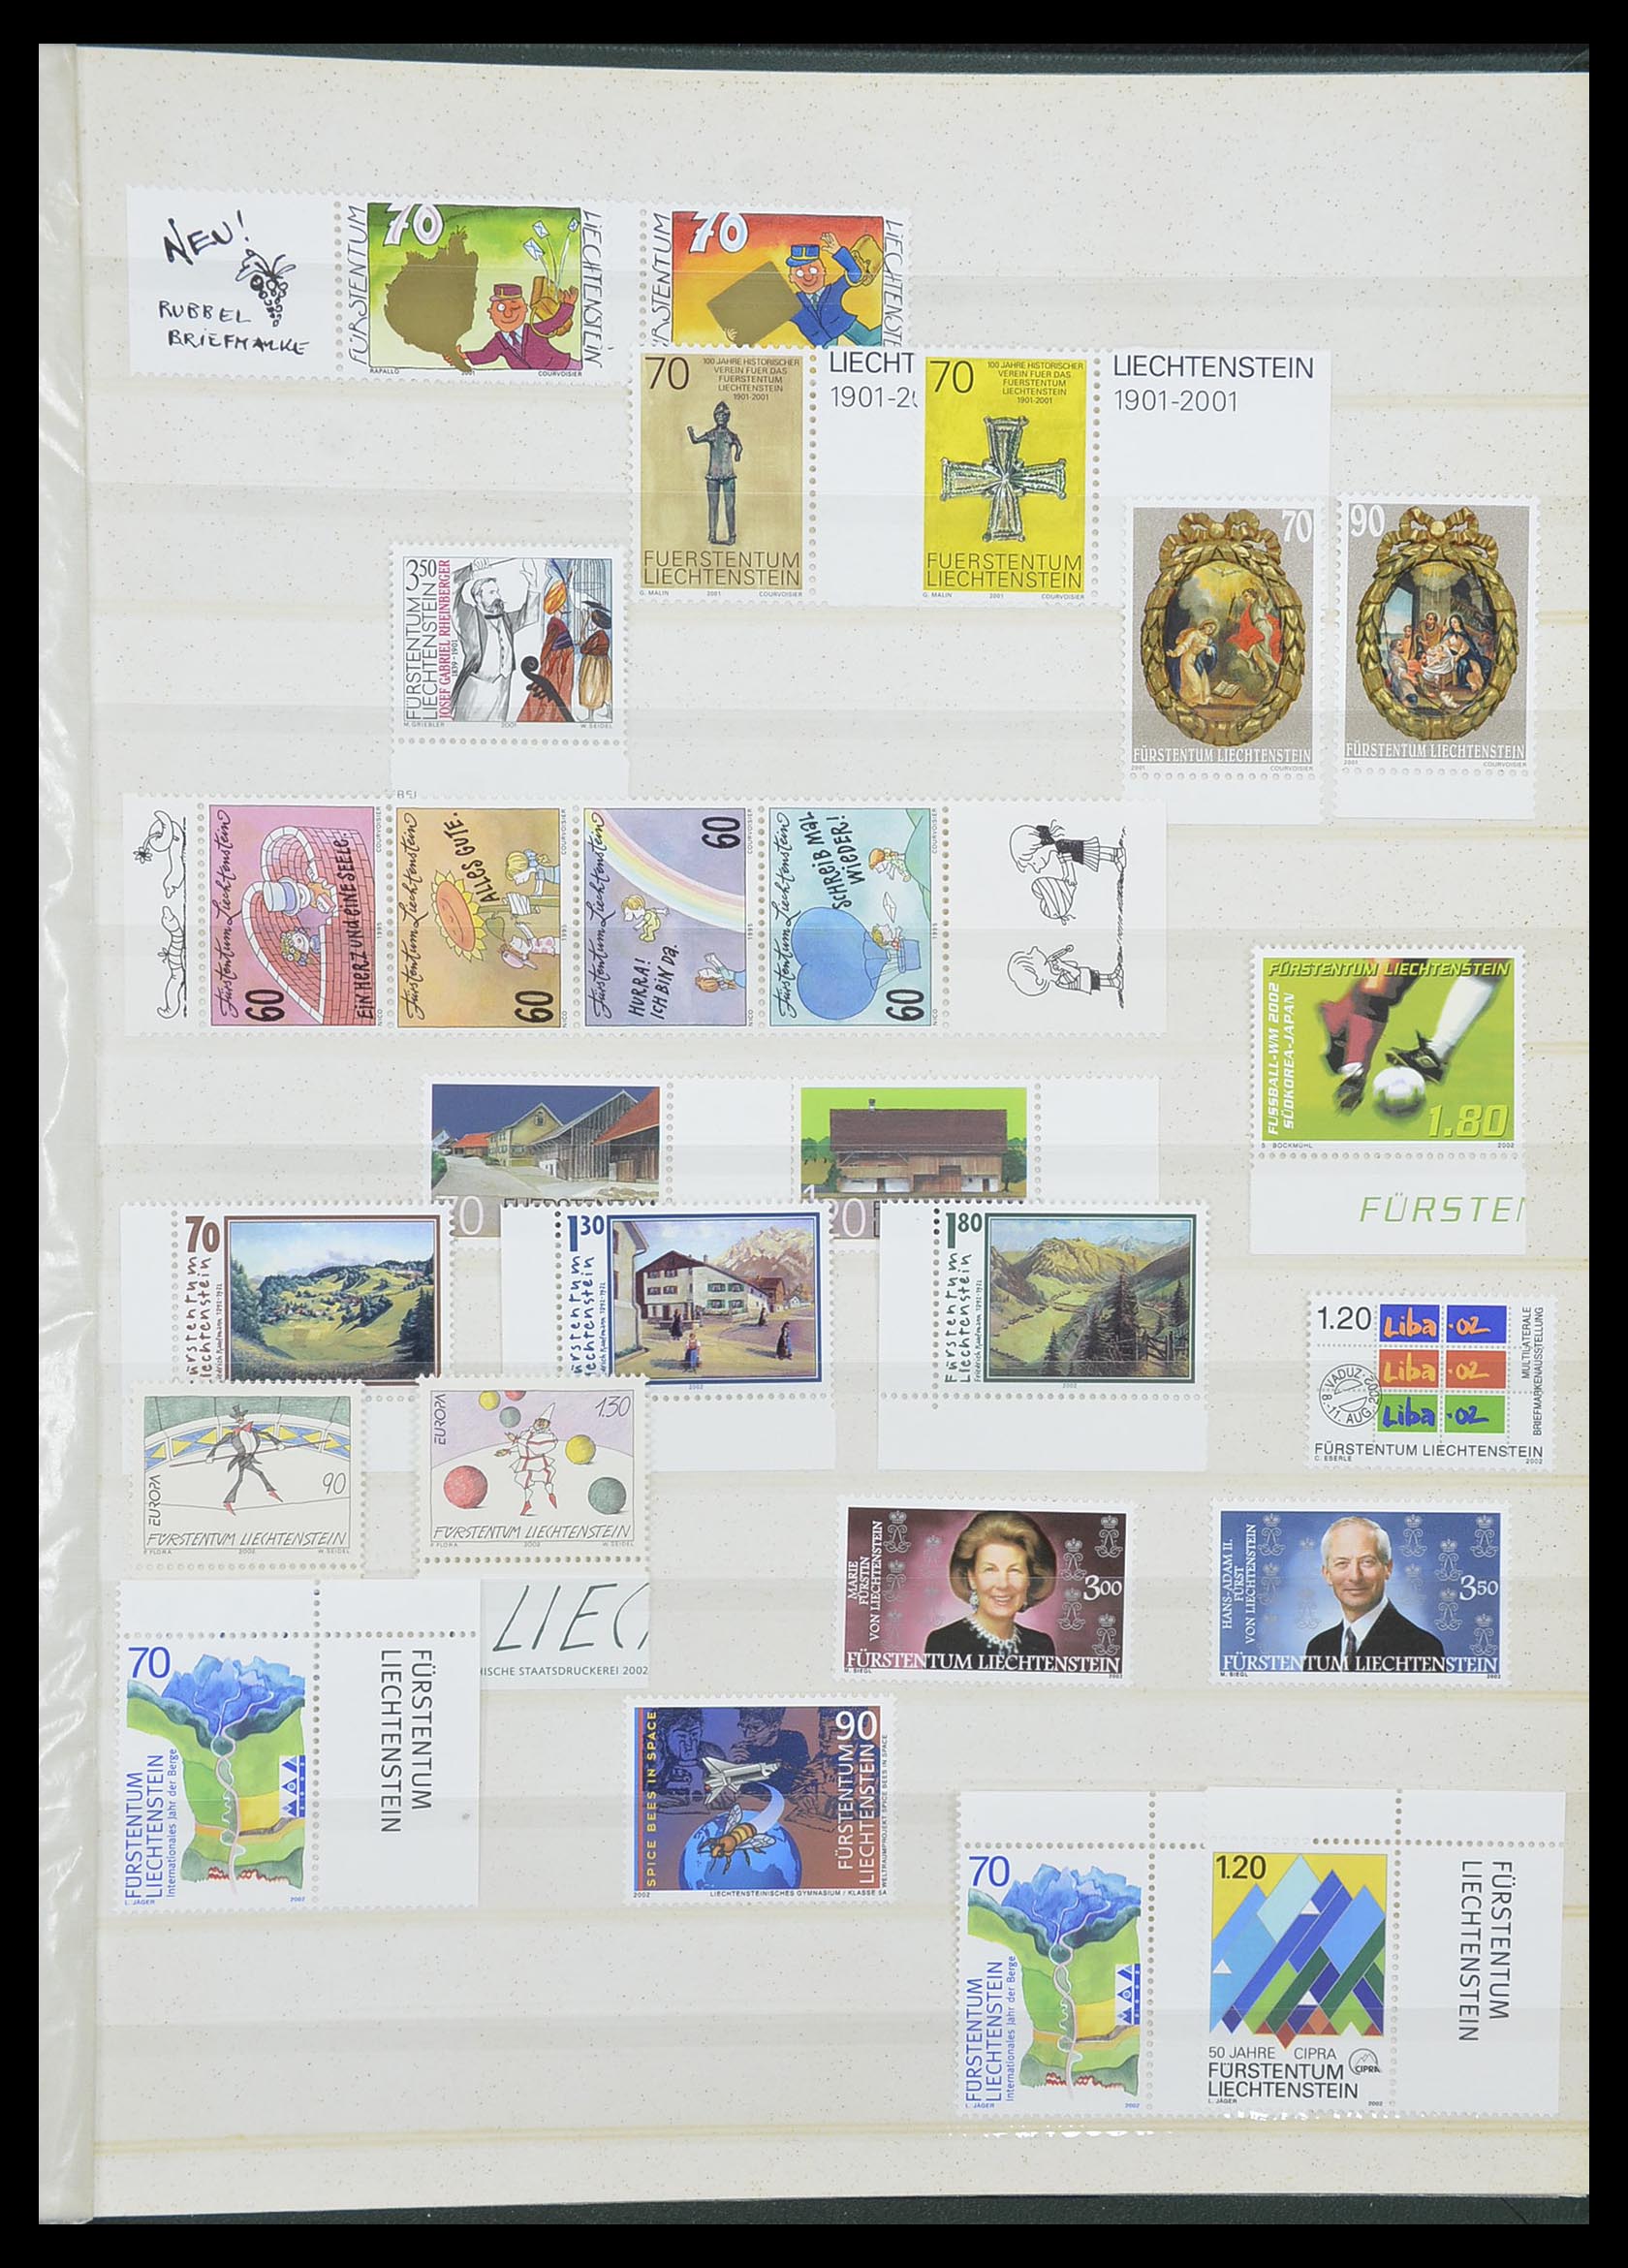 33884 029 - Stamp collection 33884 Liechtenstein 1920-2002.